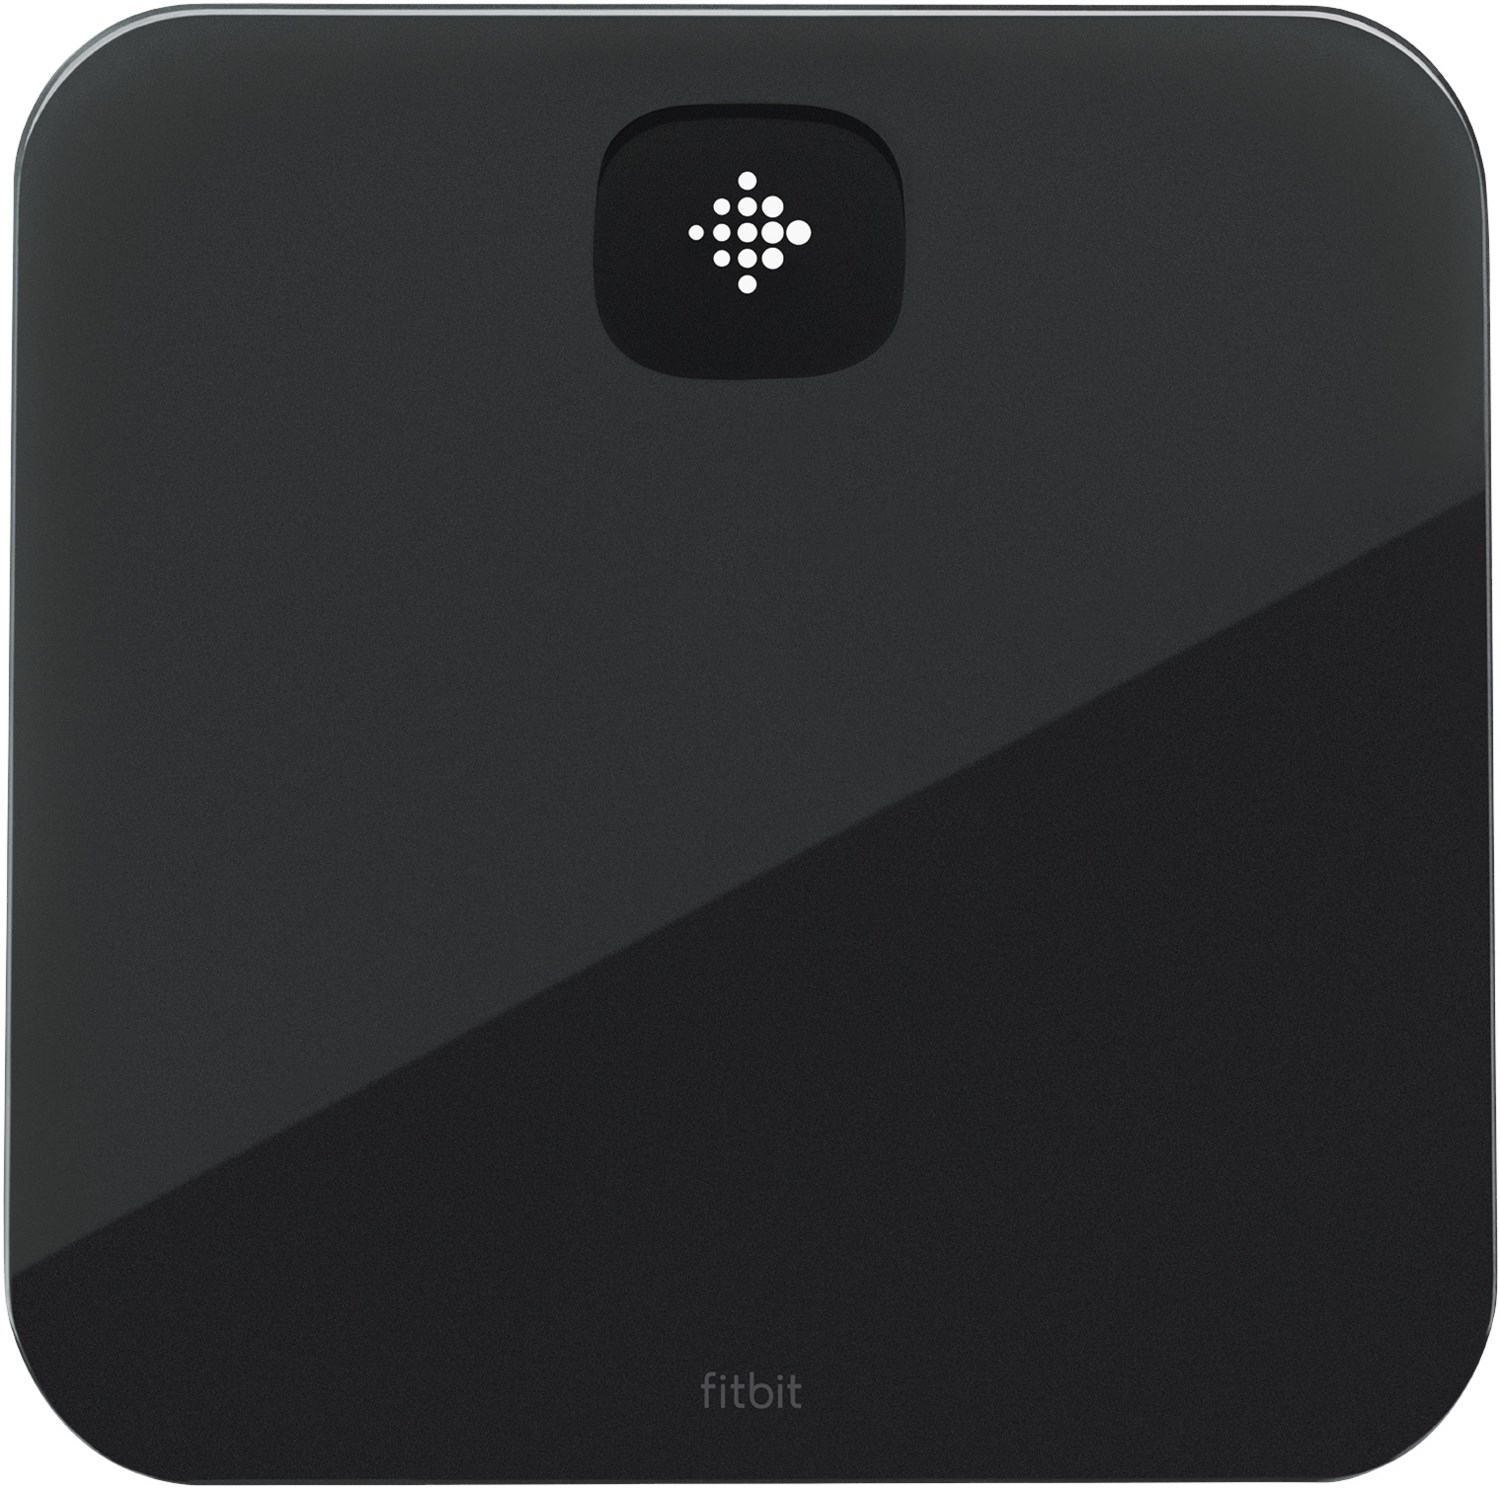 Fitbit Aria Air Bluetooth Digitale Körpergewicht und BMI Smart Waage schwarz